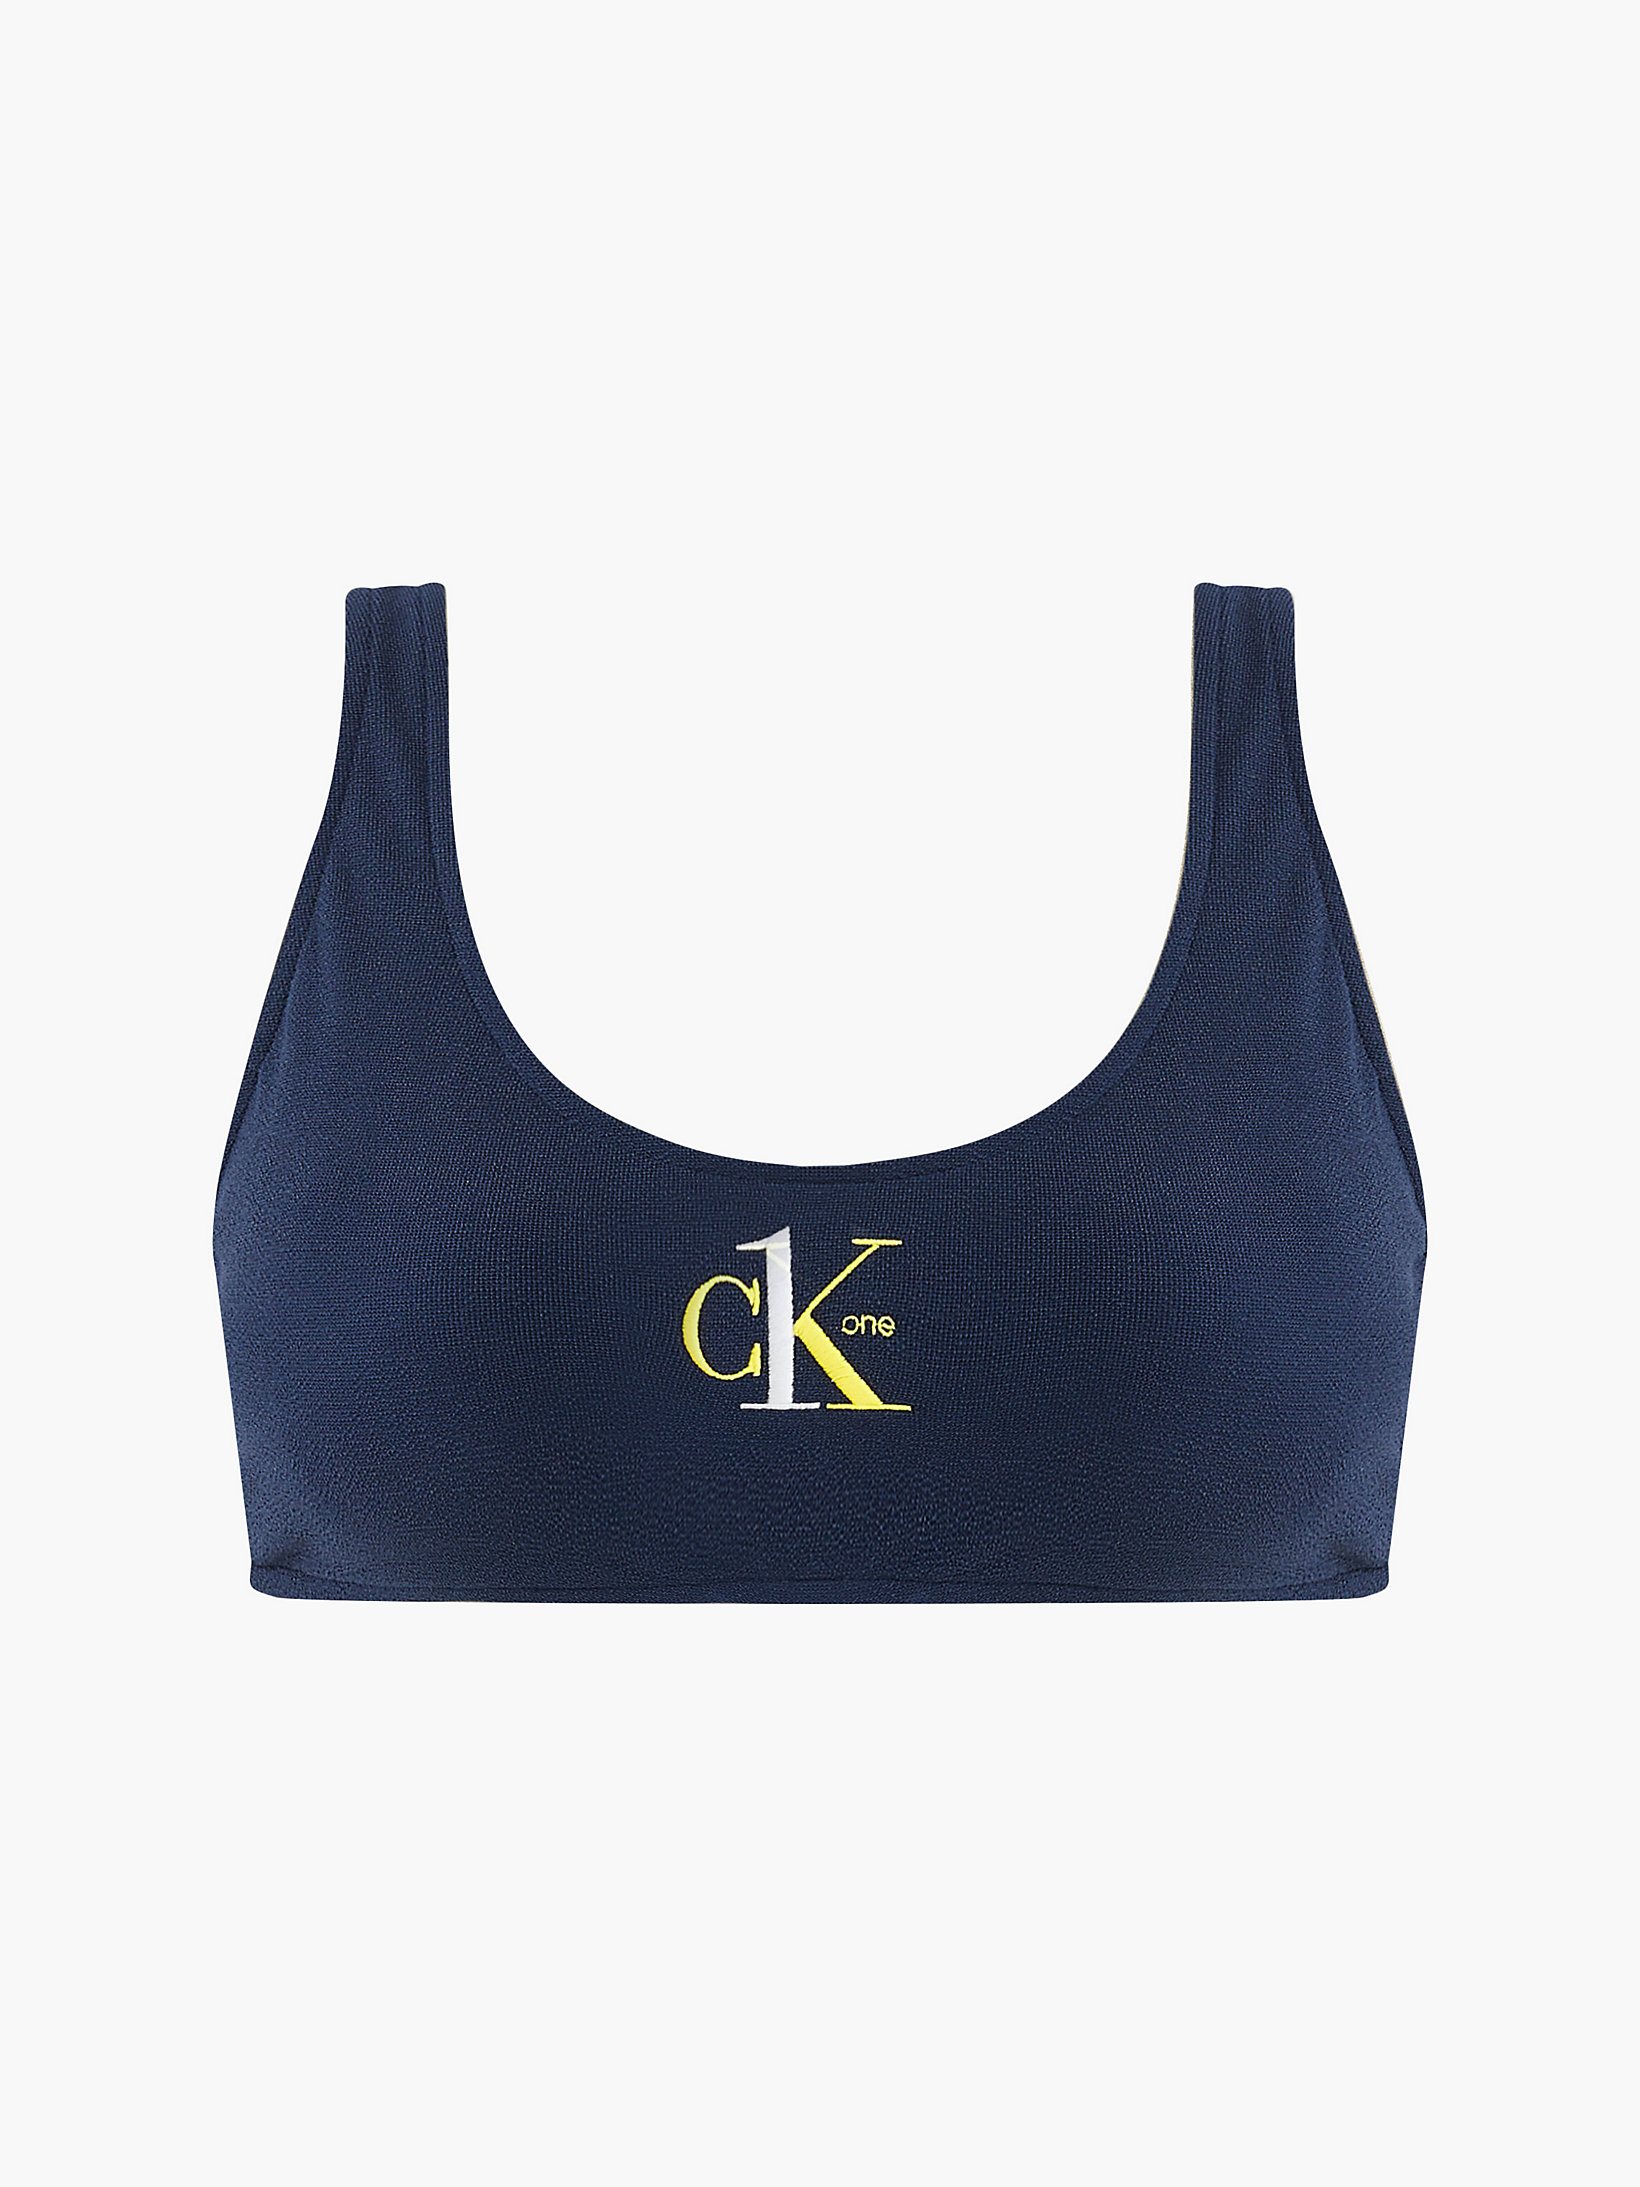 Navy Iris Bralette Bikini-Top - CK One undefined Damen Calvin Klein